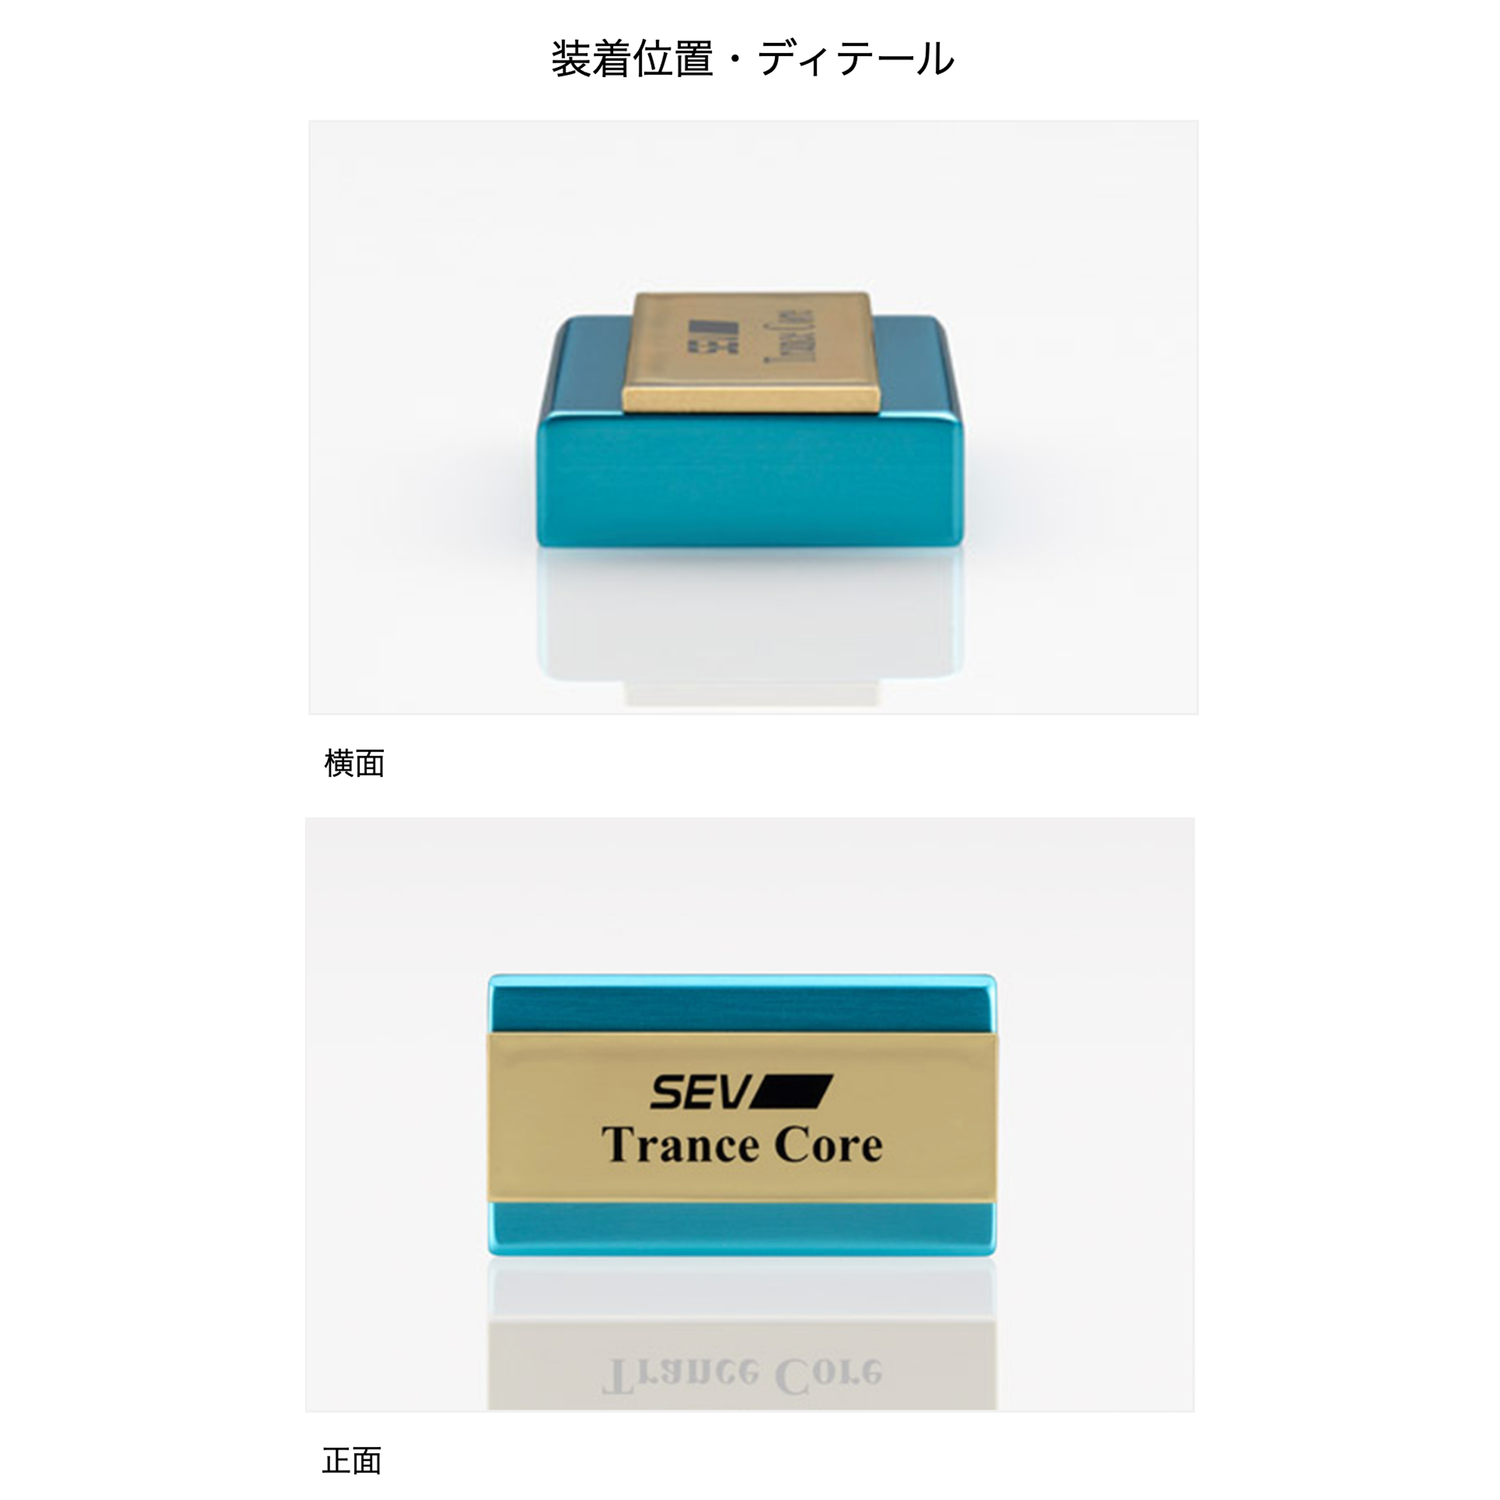 セブ トランスコア 【 SEV Trance Core 】